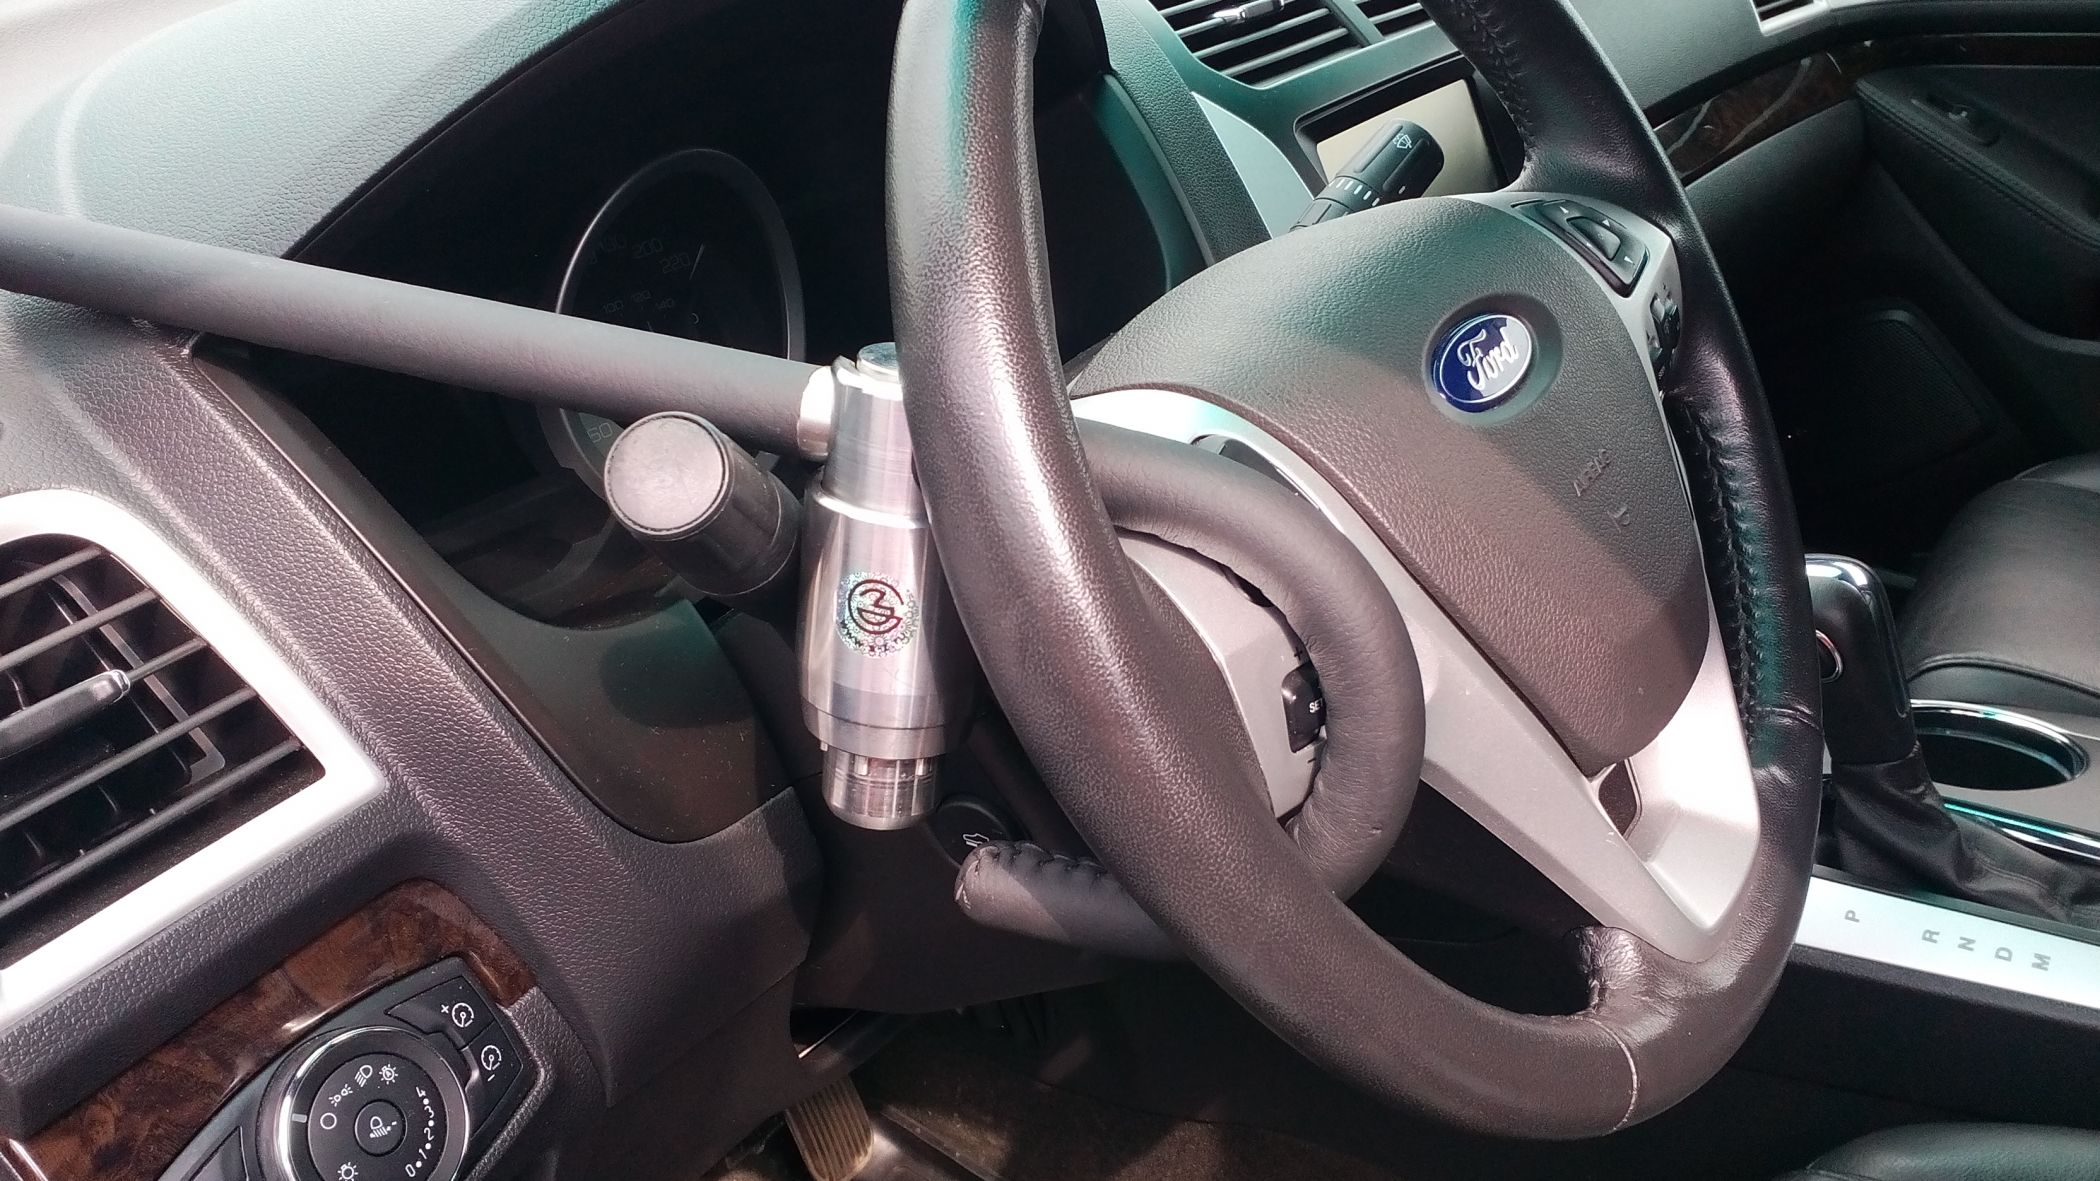 Блокиратор руля Питон установленный на автомобиле Ford Explorer 2011-2016